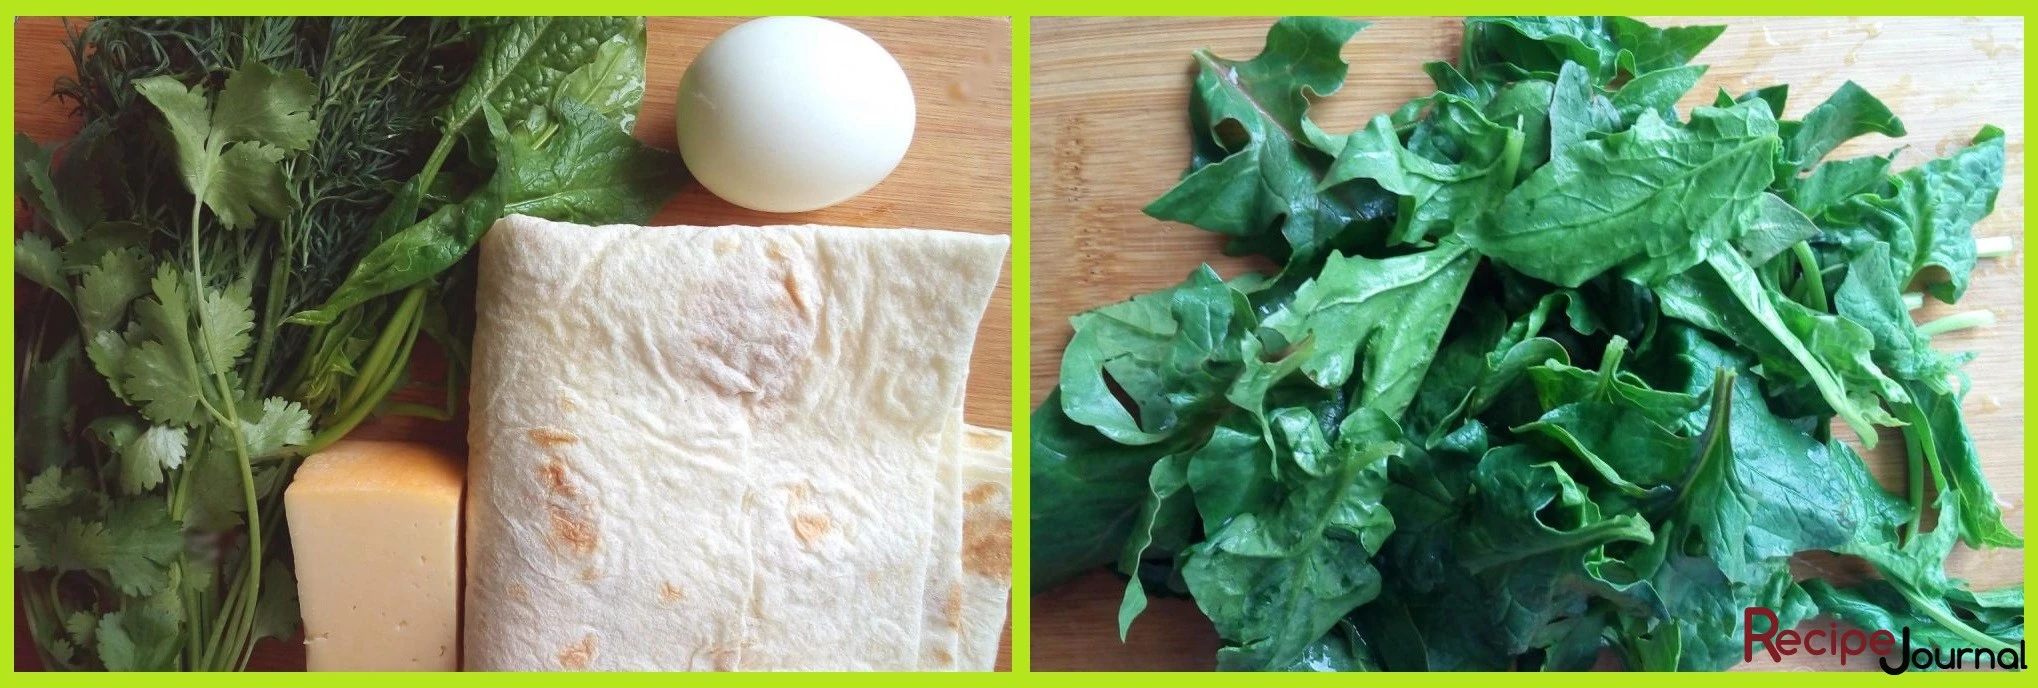 Отварим яйца заранее, шпинат и другую зелень переберем, промоем и обсушим.